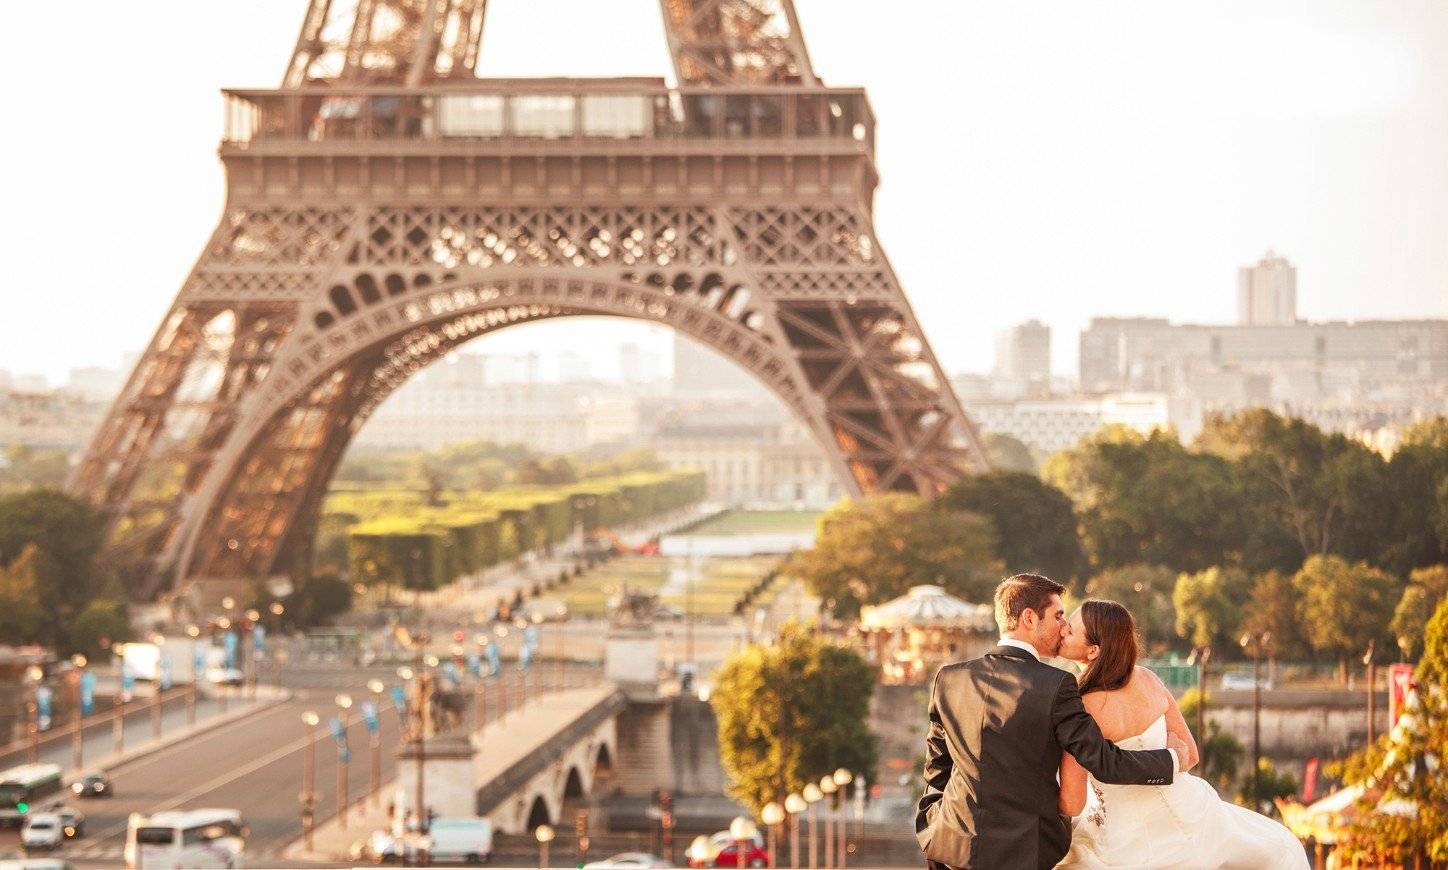 Свадьба в париже, важные нюансы бракосочетания за границей